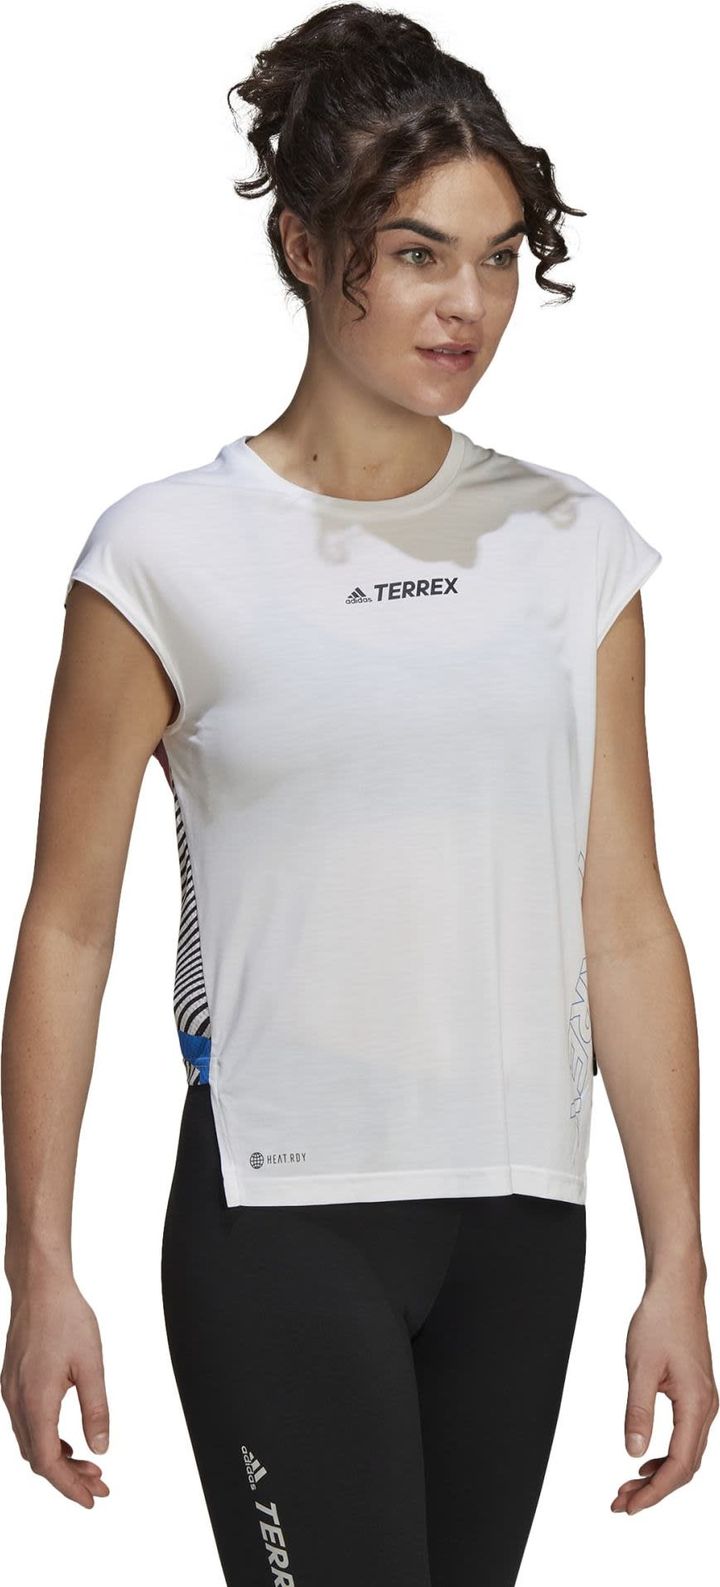 Adidas Women's Terrex Agravic Pro Top White Adidas